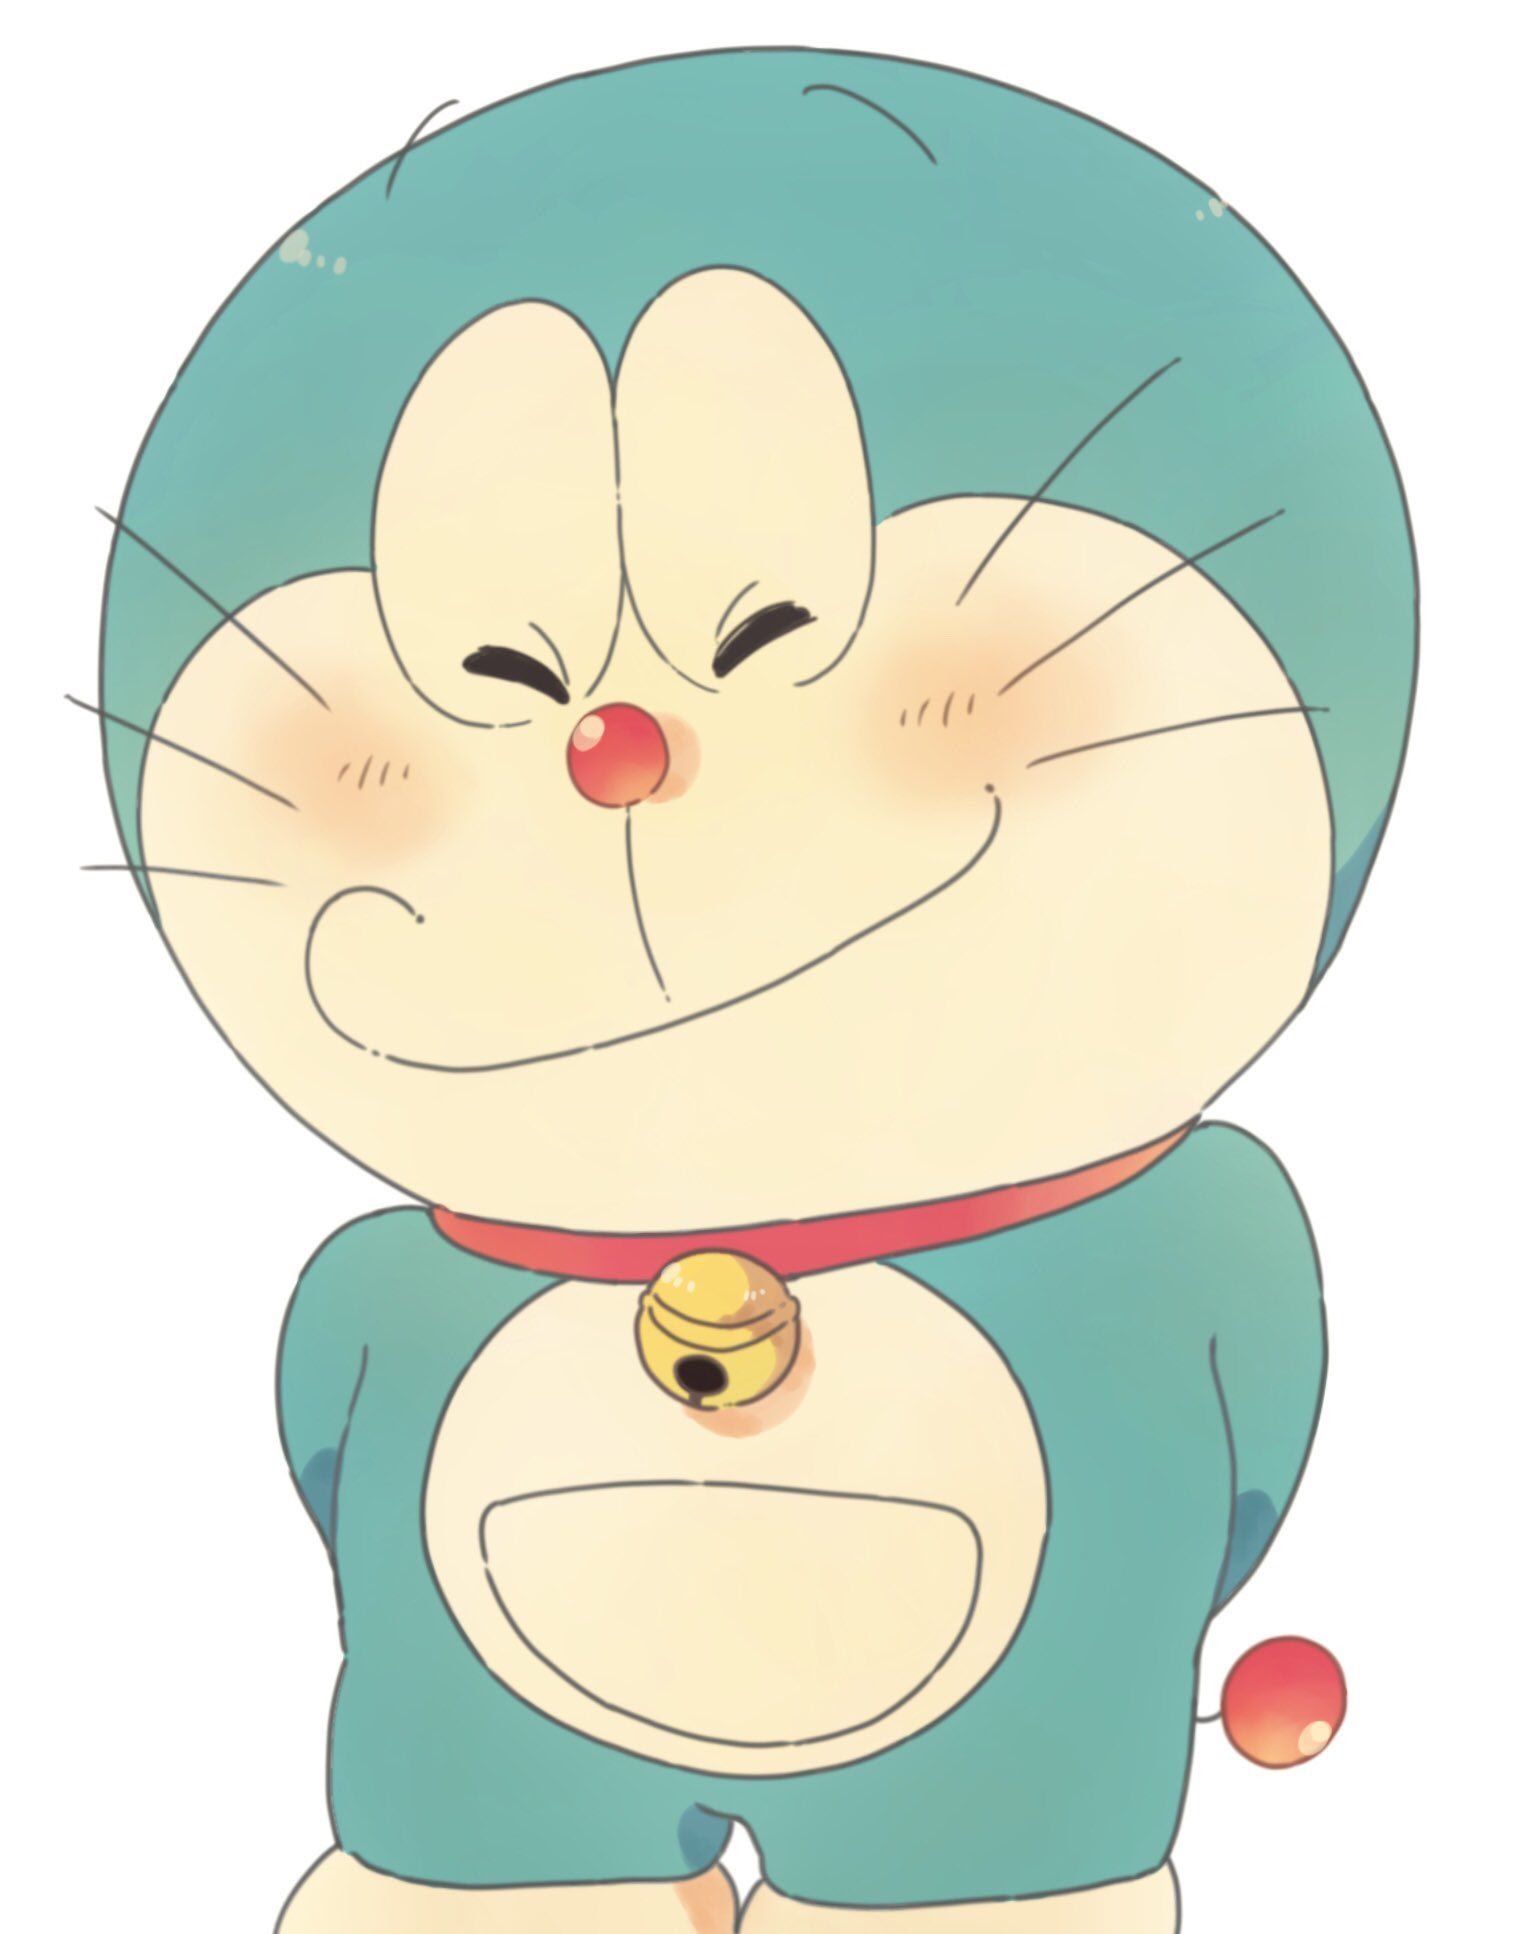 Bạn có biết rằng Doraemon được tạo ra với tham vọng trở thành chiếc máy trợ giúp chỉ đạo các đứa trẻ? Cuộc phiêu lưu với Nobita không phải là những gì tôi muốn kể với bạn trong câu chuyện này. Hãy chờ đợi một vài phút và cảm nhận những điều thú vị về nguồn gốc của Doraemon.